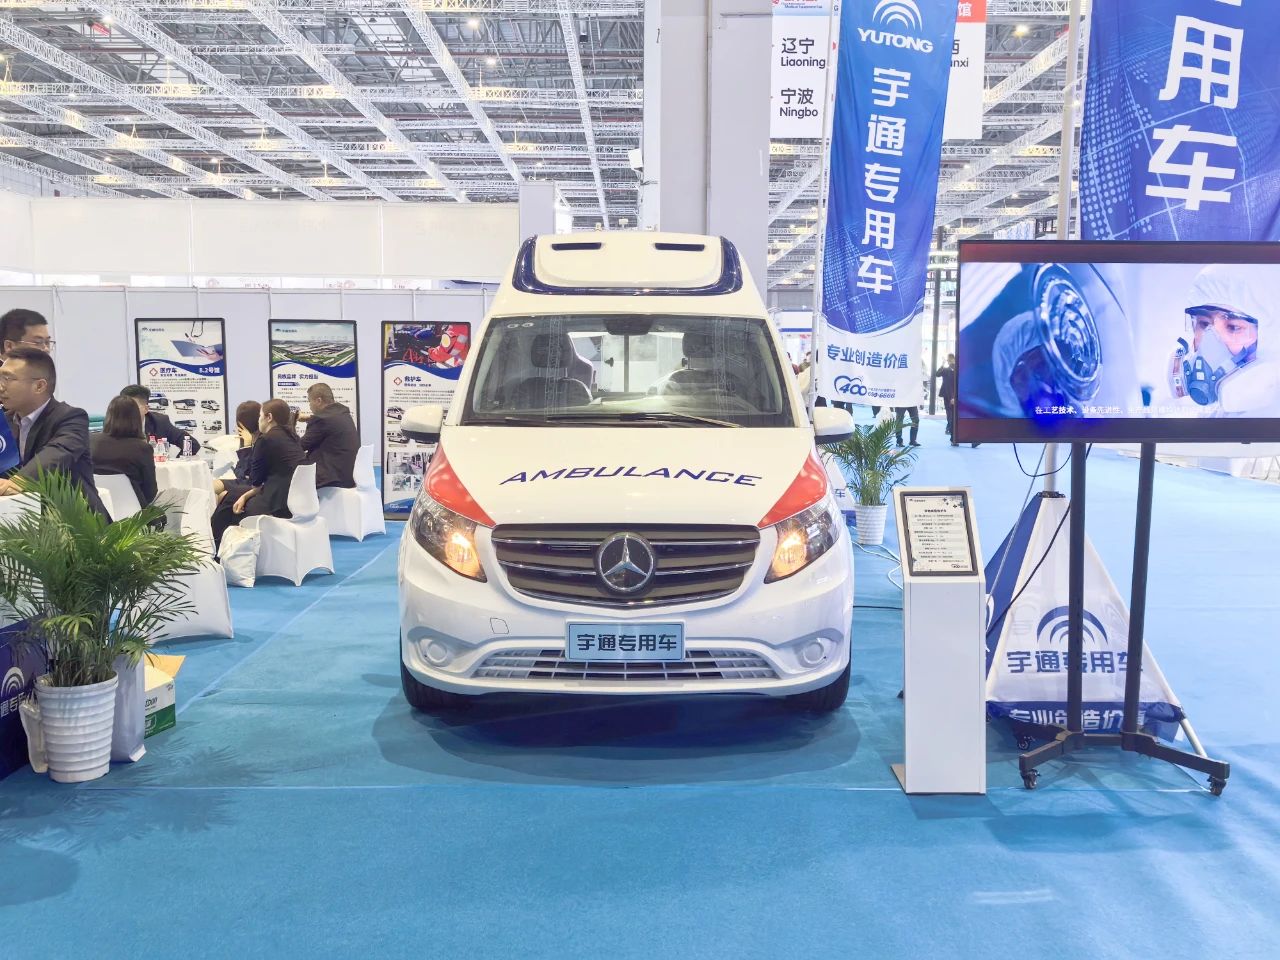 巴黎澳门人娱乐网站医疗车产品重磅亮相第89届中国国际医疗器械博览会（CMEF）！